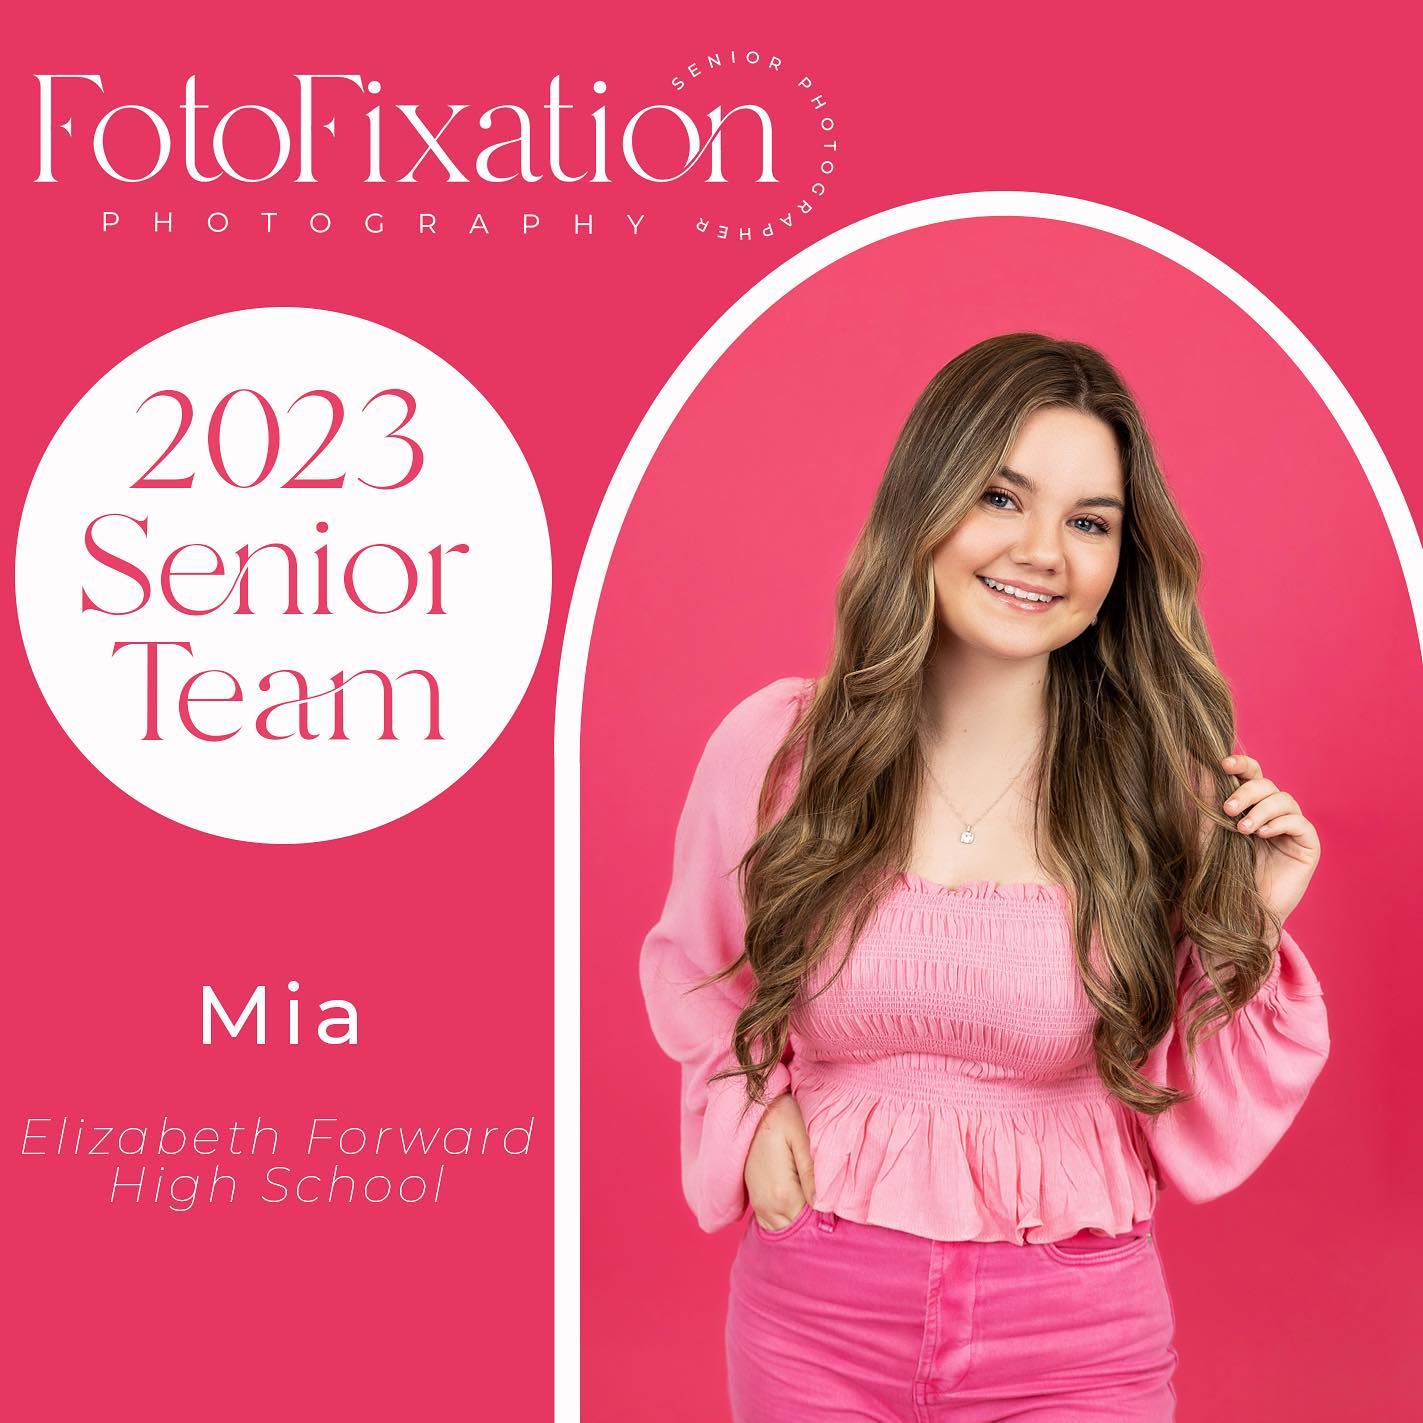 Fotofixation Photography - 2023 Senior Team - Mia - Elizabeth Forward High School-1